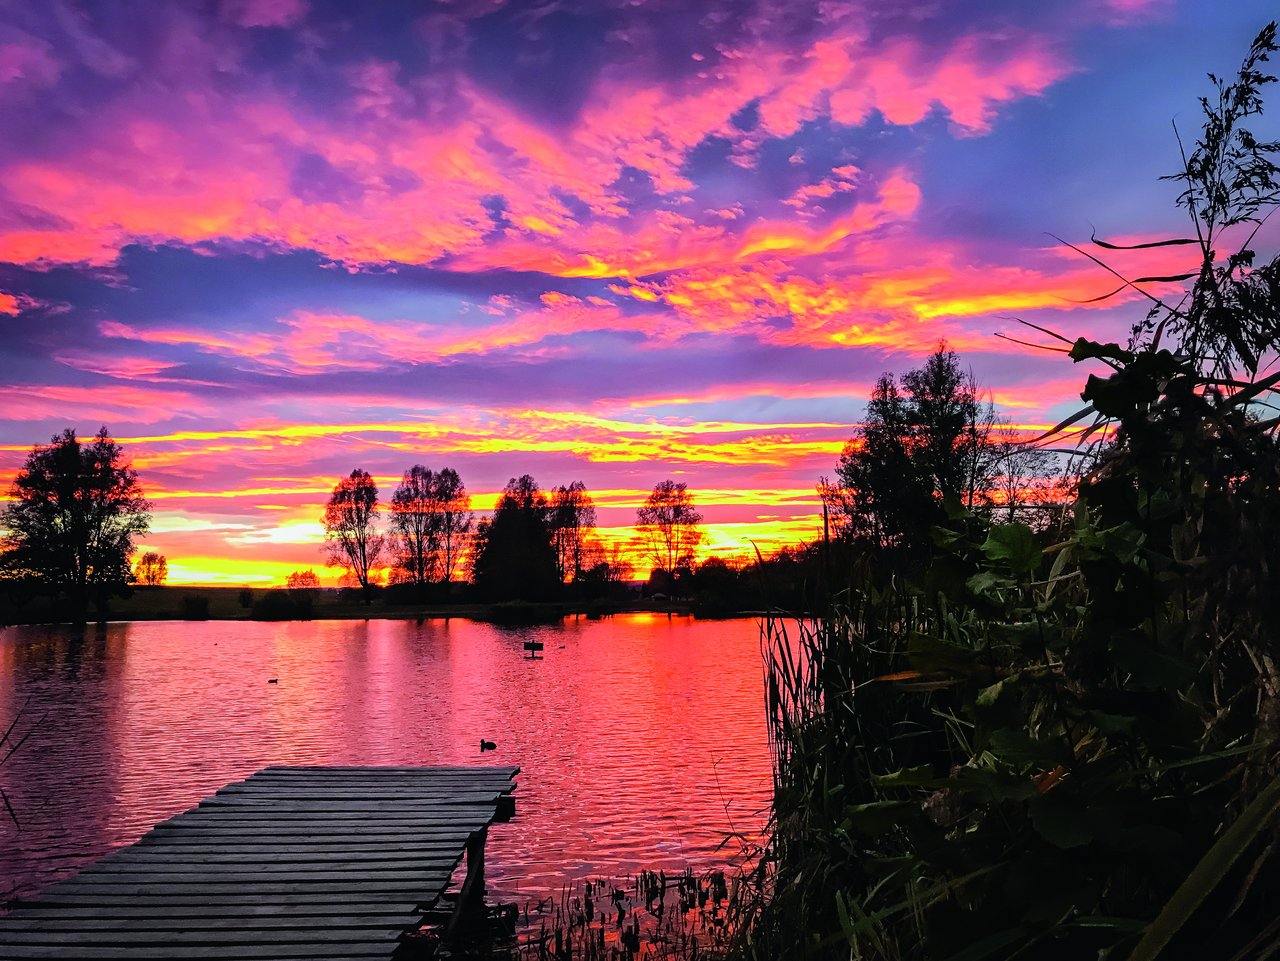 Die Wolken sind Lila, Pink und Gelb, ihre Farben spiegeln sich beim Sonnenuntergang im Wasser